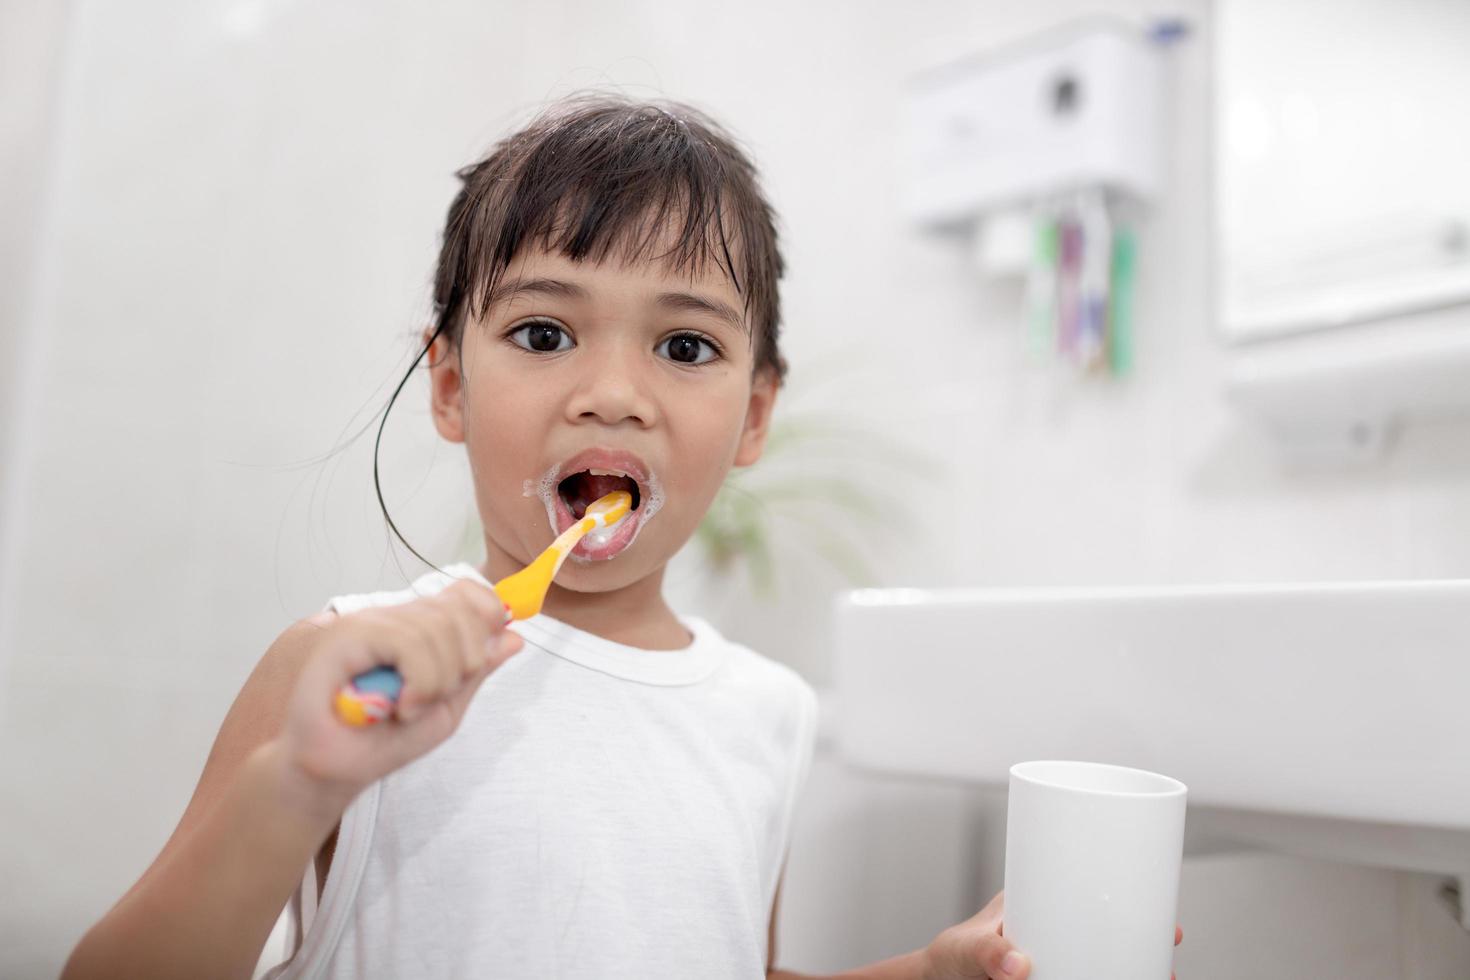 petite fille mignonne se nettoyant les dents avec une brosse à dents dans la salle de bain photo